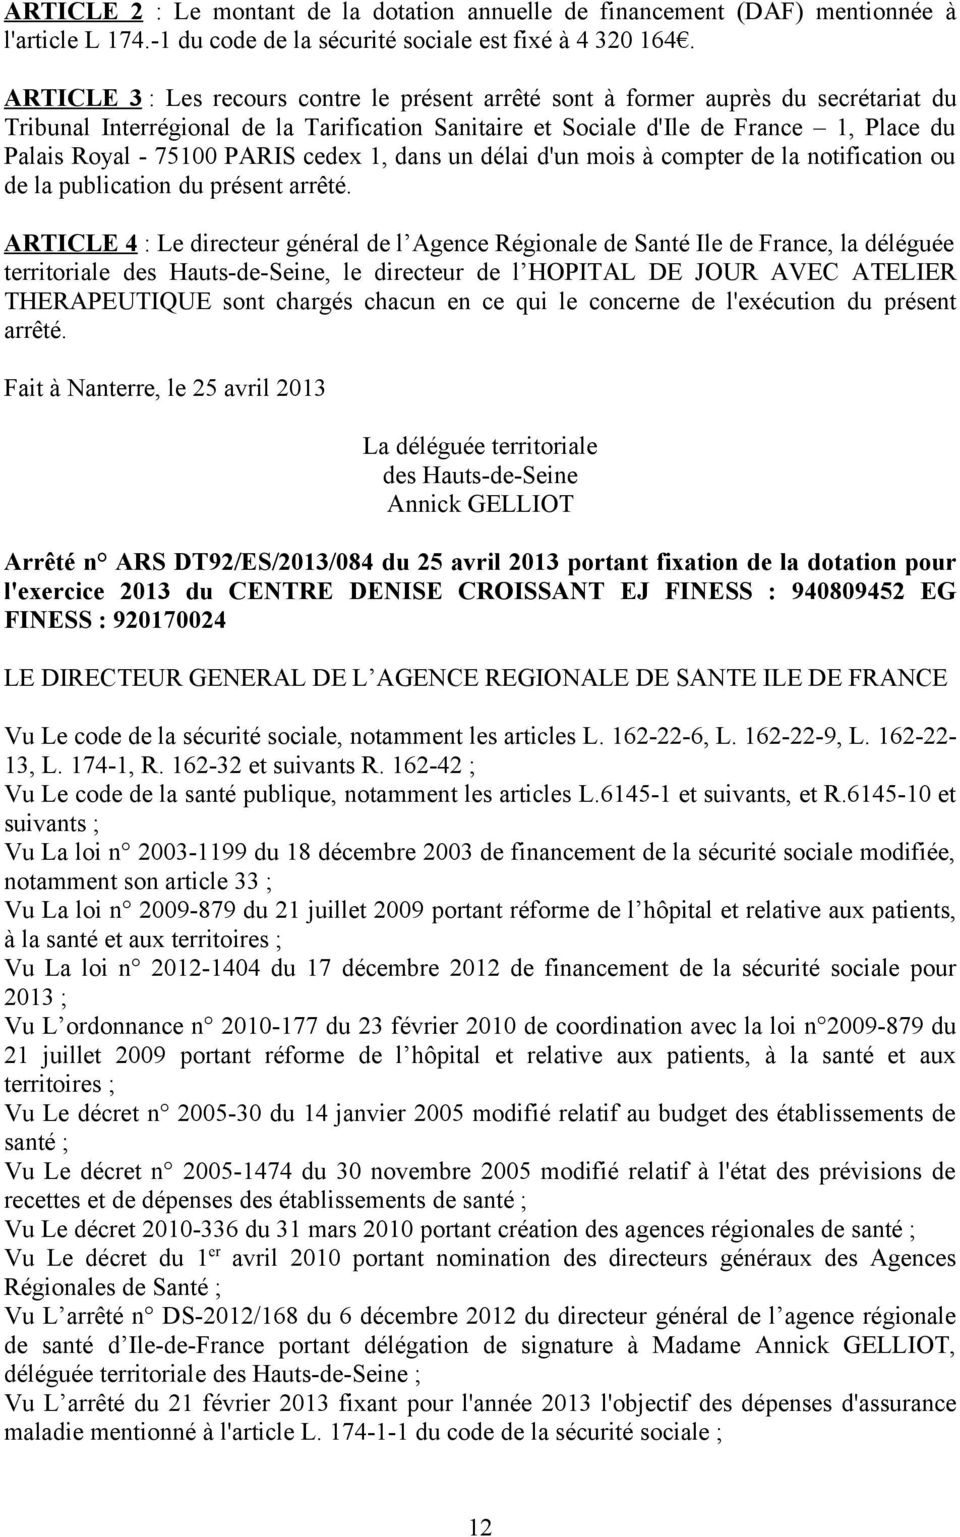 PARIS cedex 1, dans un délai d'un mois à compter de la notification ou de la publication du présent arrêté.